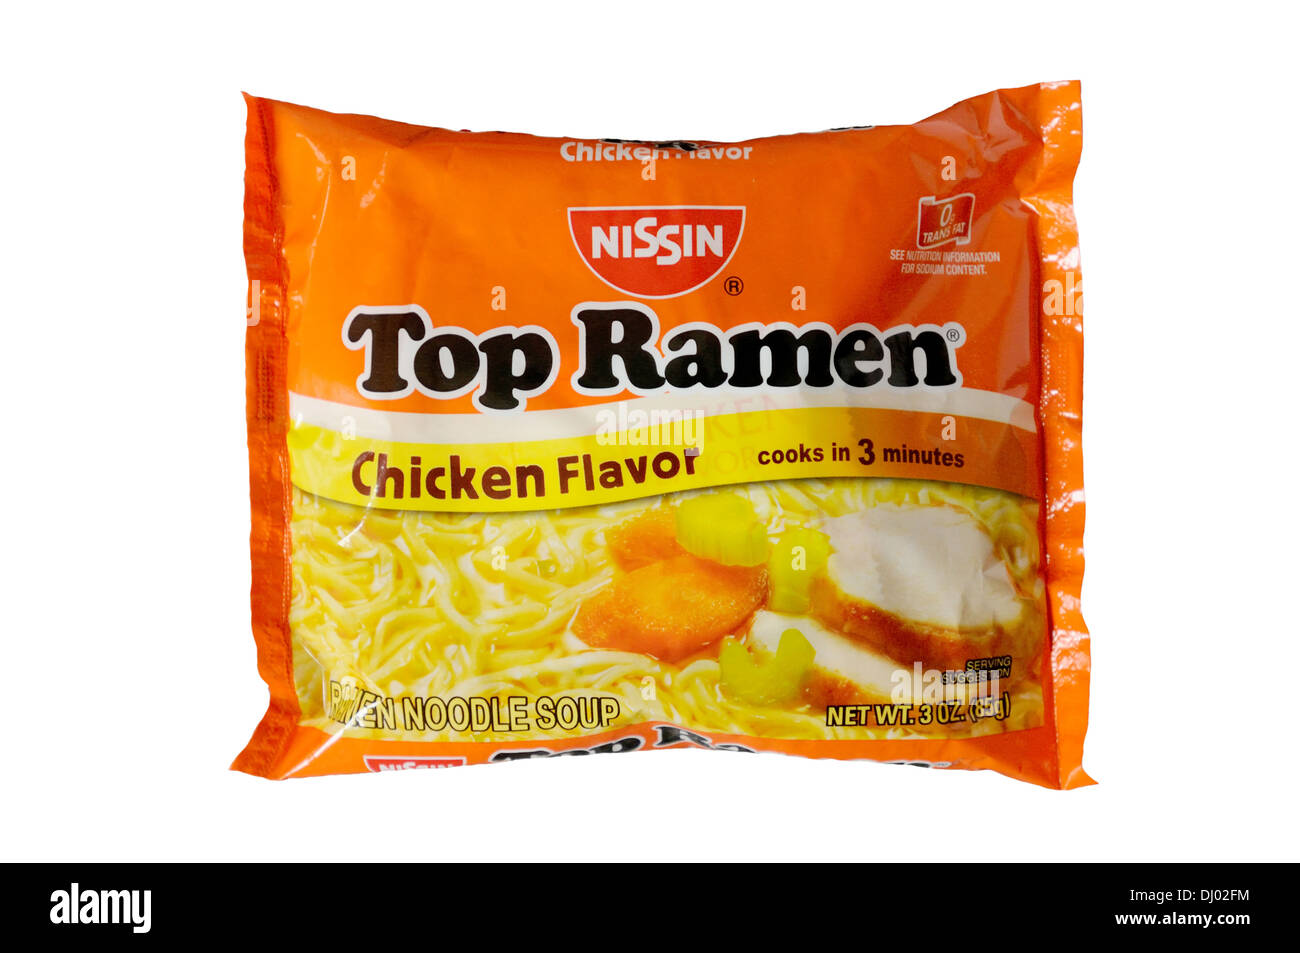 Package of Top Ramen chicken flavor Stock Photo